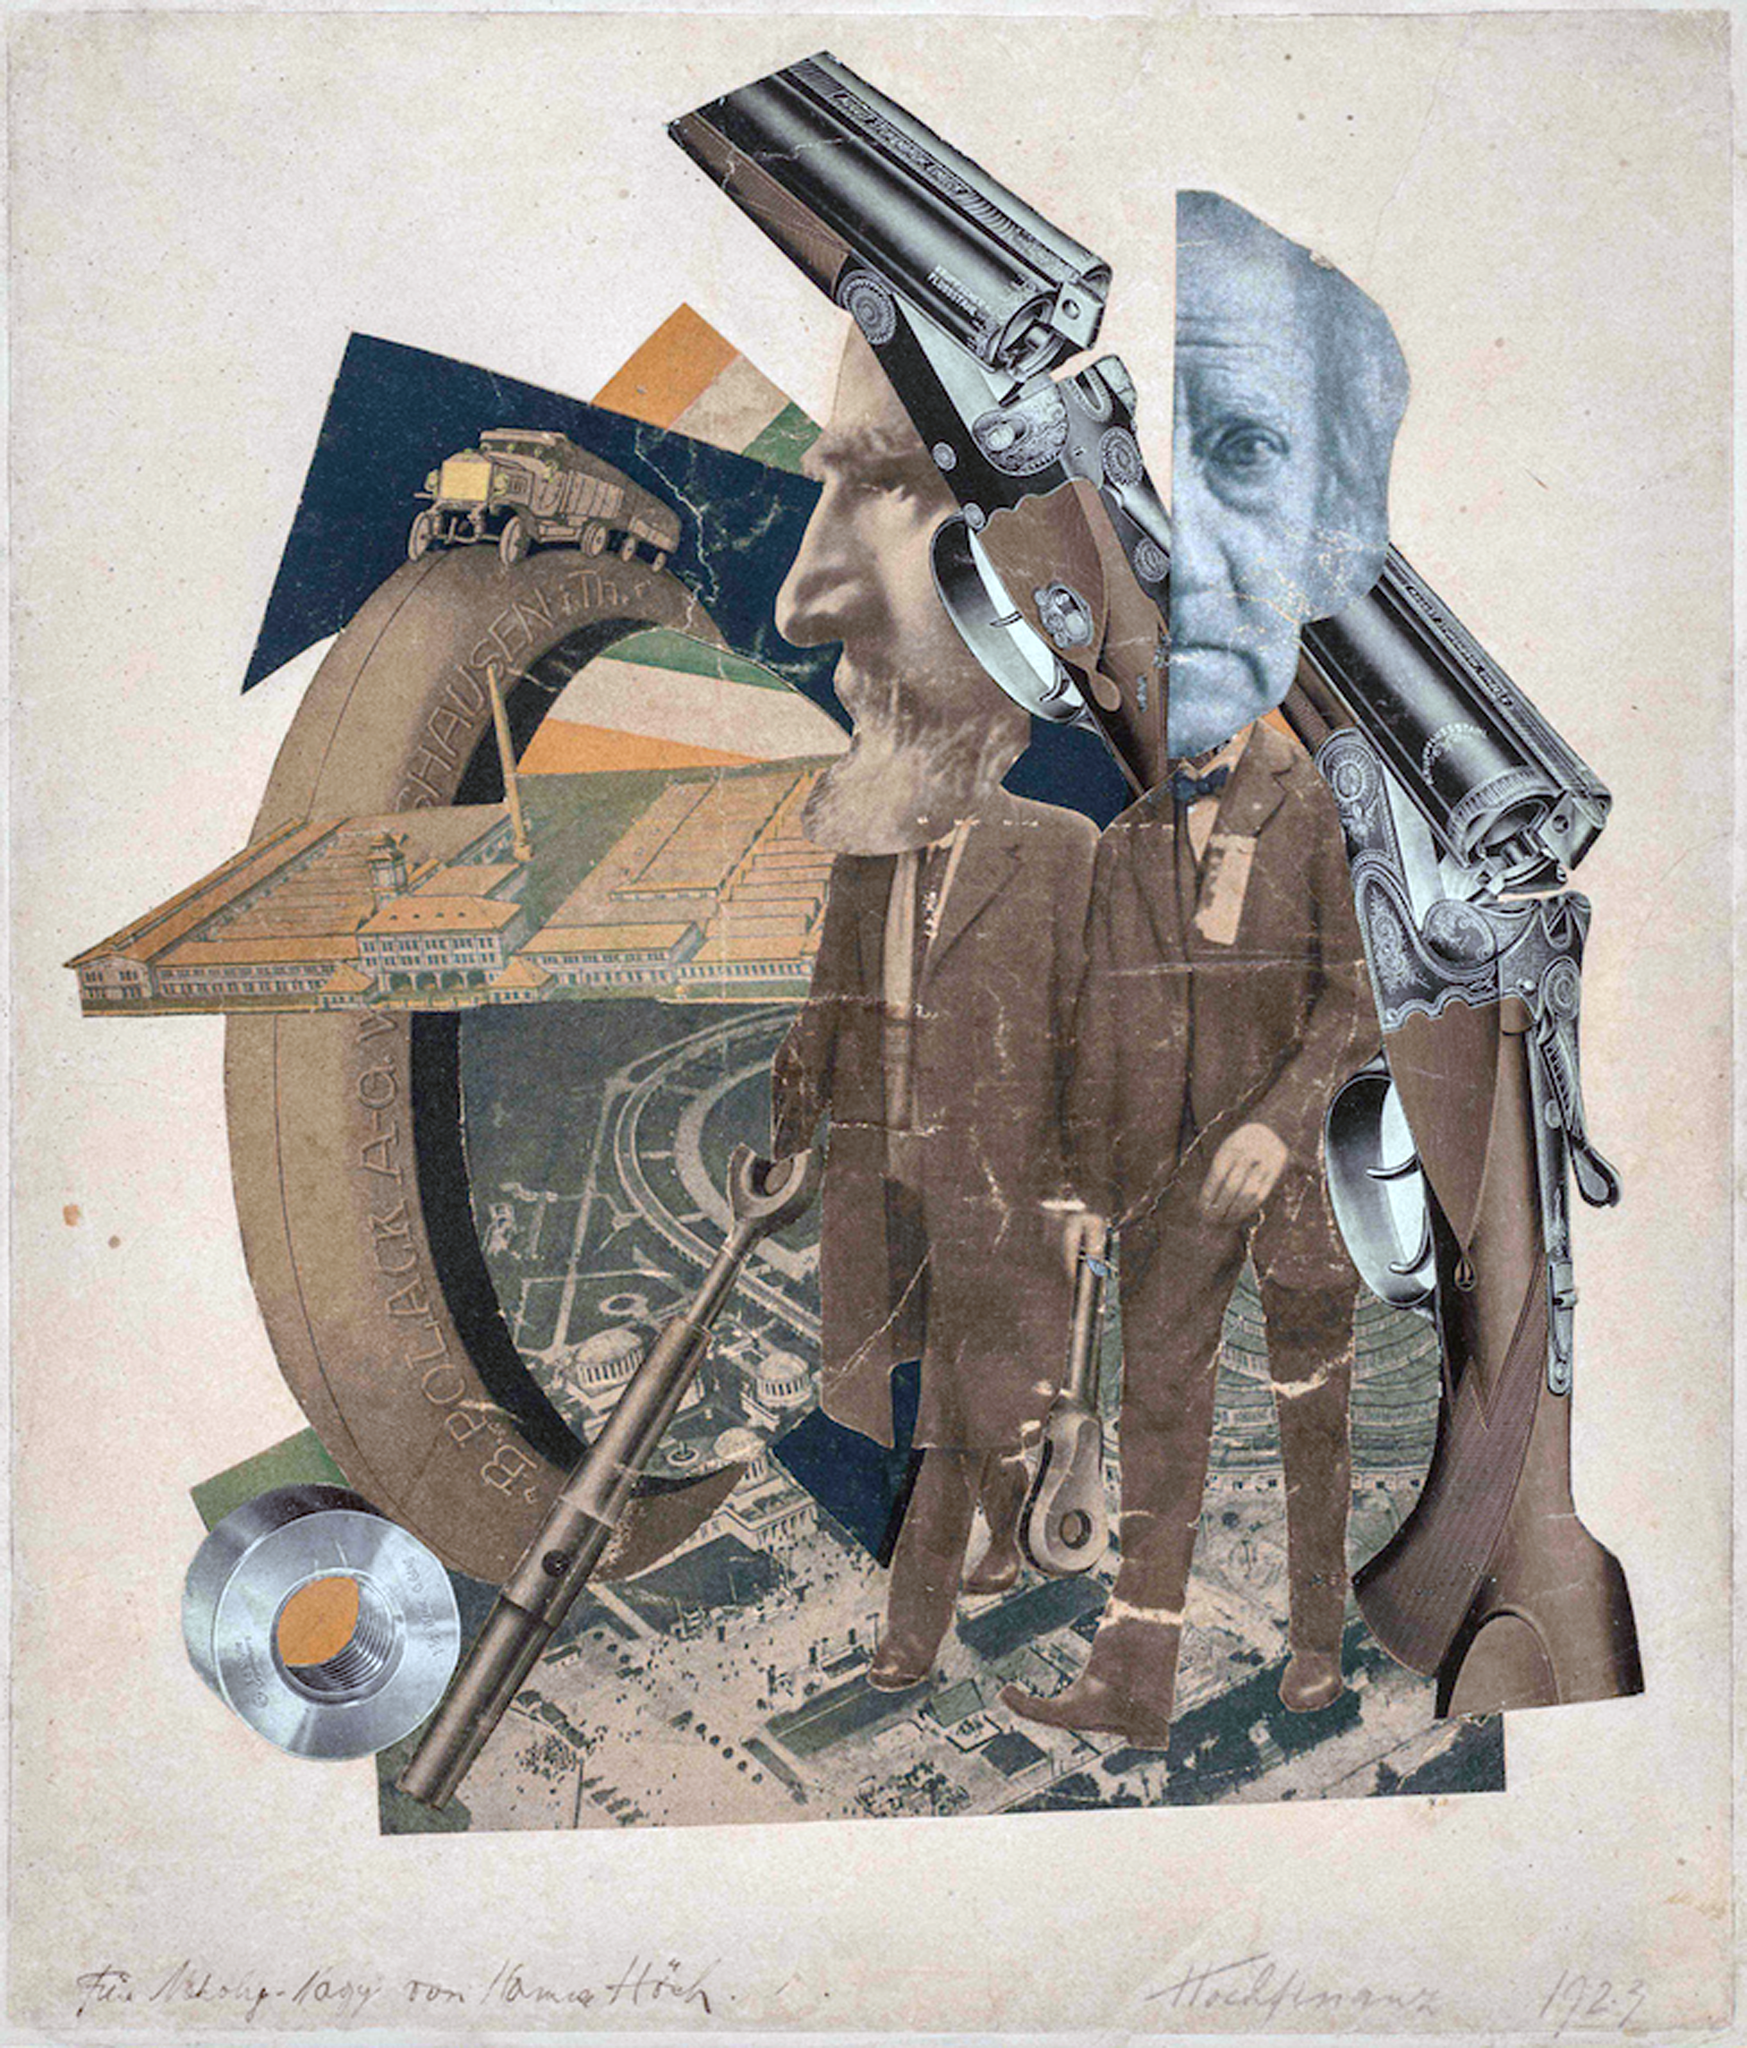 Hannah Höch, Hochfinanz (High Finance), 1923, collage, 36 x 31 cm (Galerie Berinson, Berlin)